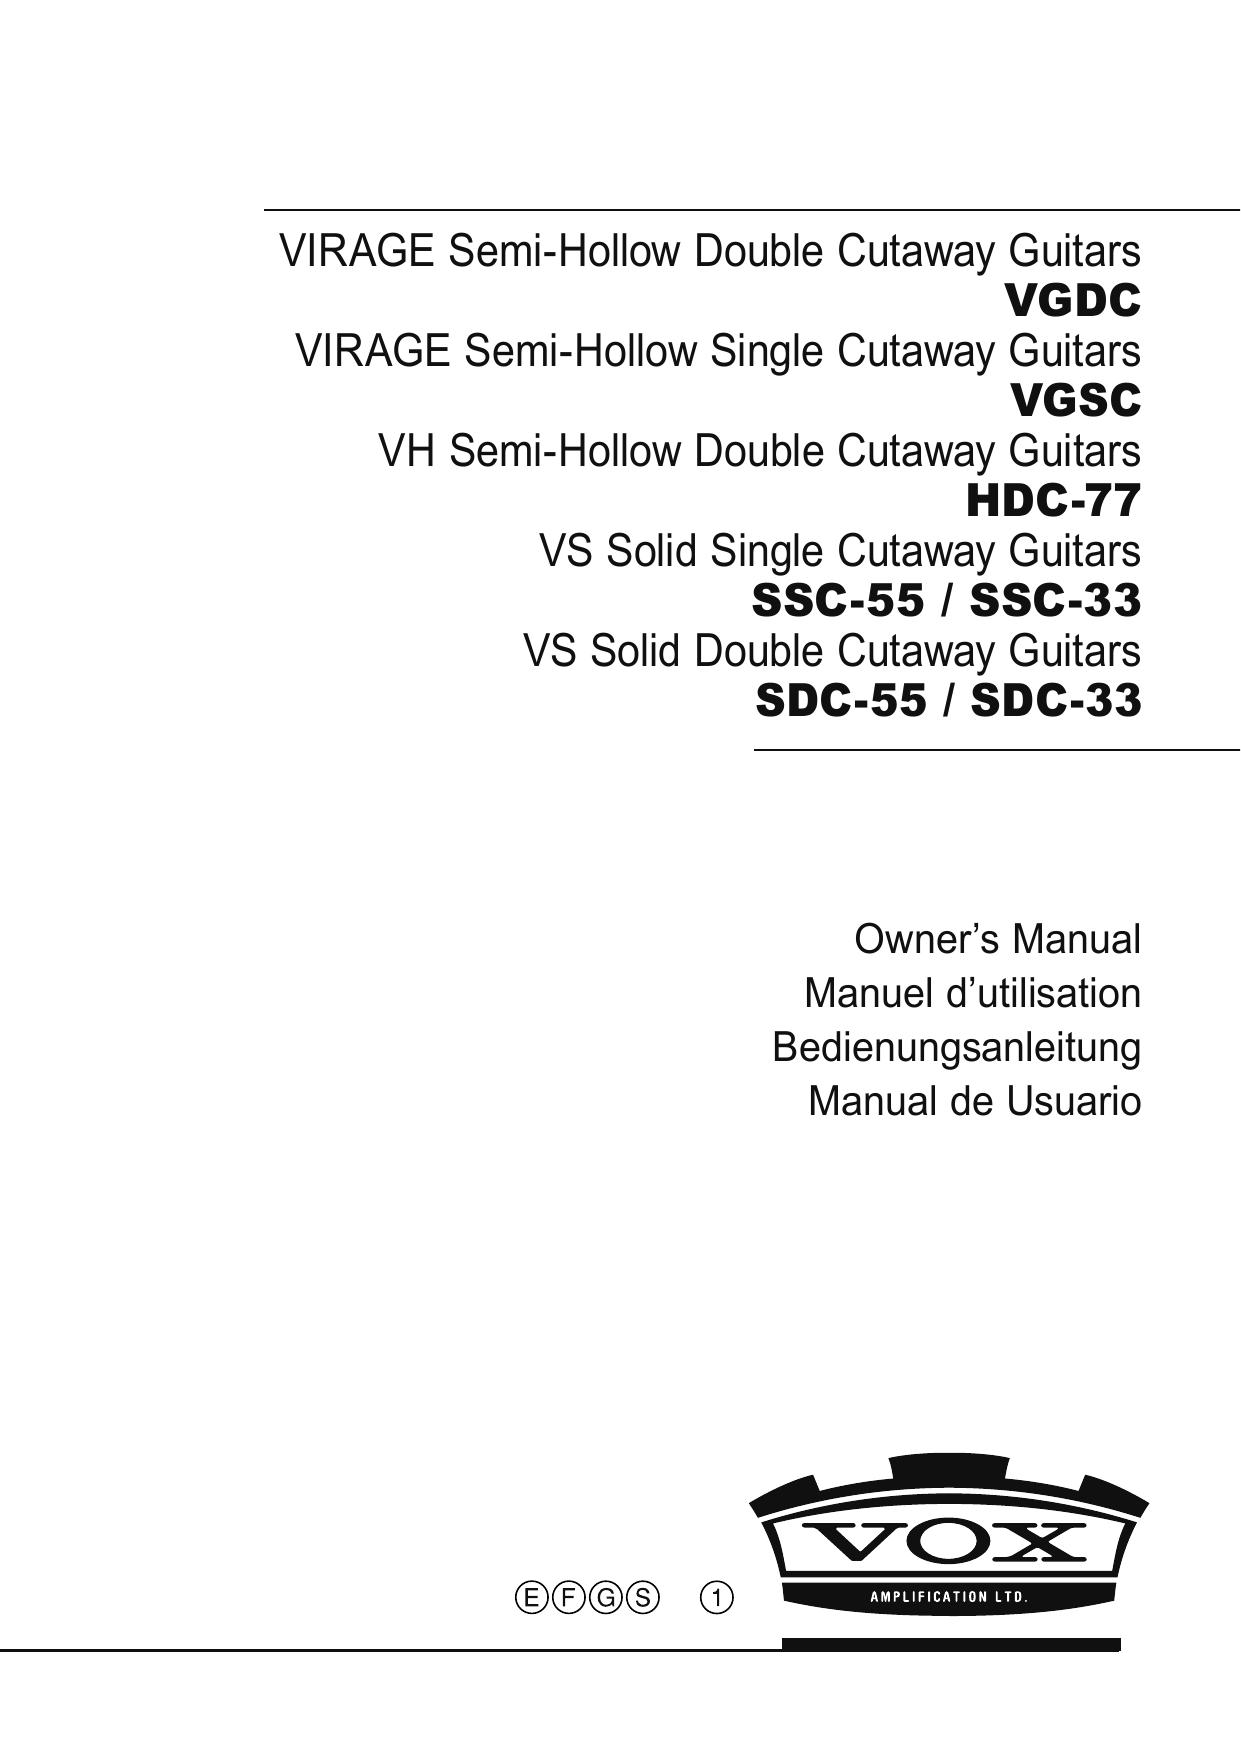 Vox SDC-33 Guitar User Manual